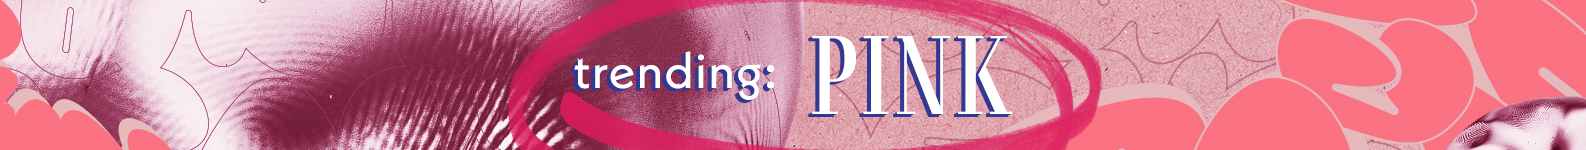 Trending Color: PINK! brand header image